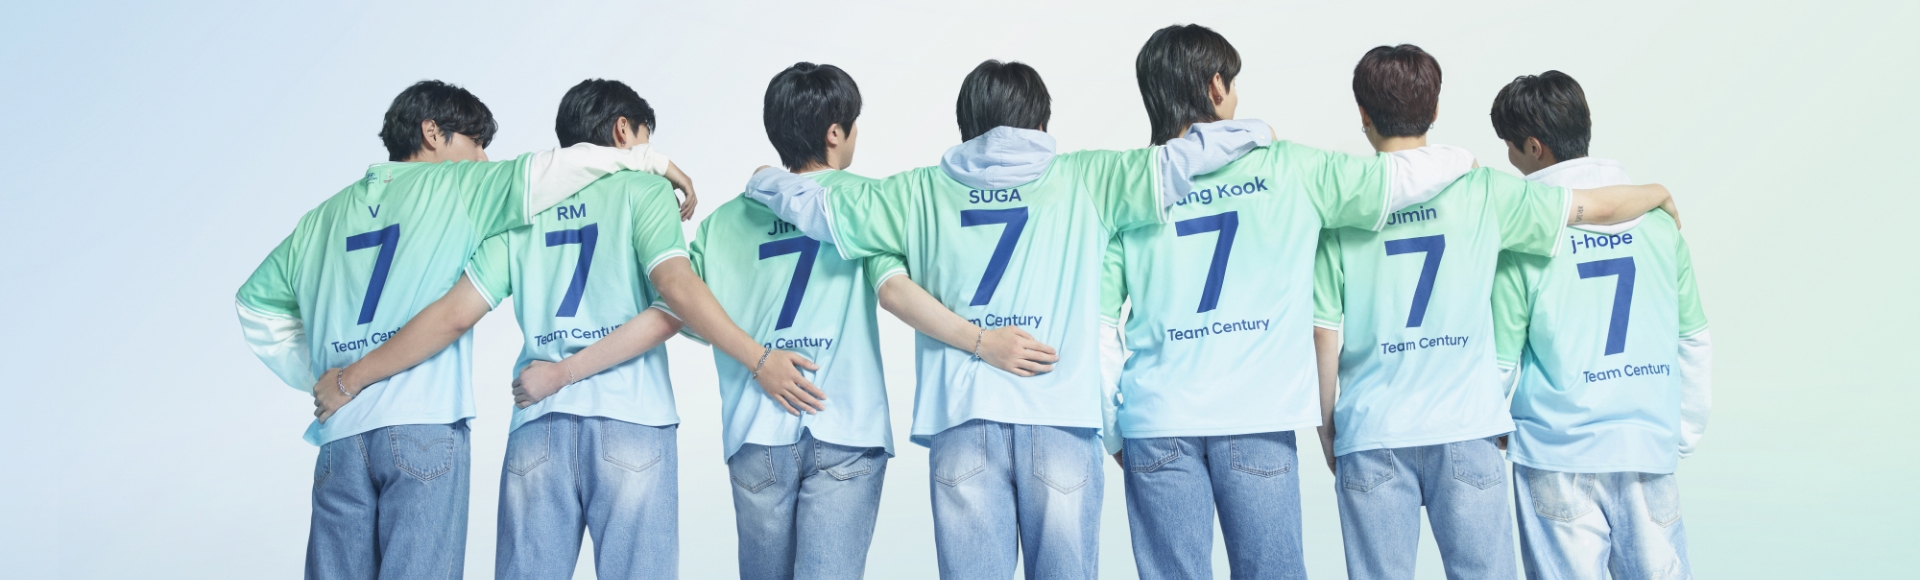 Všetkých 7 členov BTS stojacich v línii smerujúcou dozadu. Každý člen má na sebe modré džínsy so zeleným a sivým dresom Team Century s tmavomodrým číslom 7 vyobrazeným na chrbte.